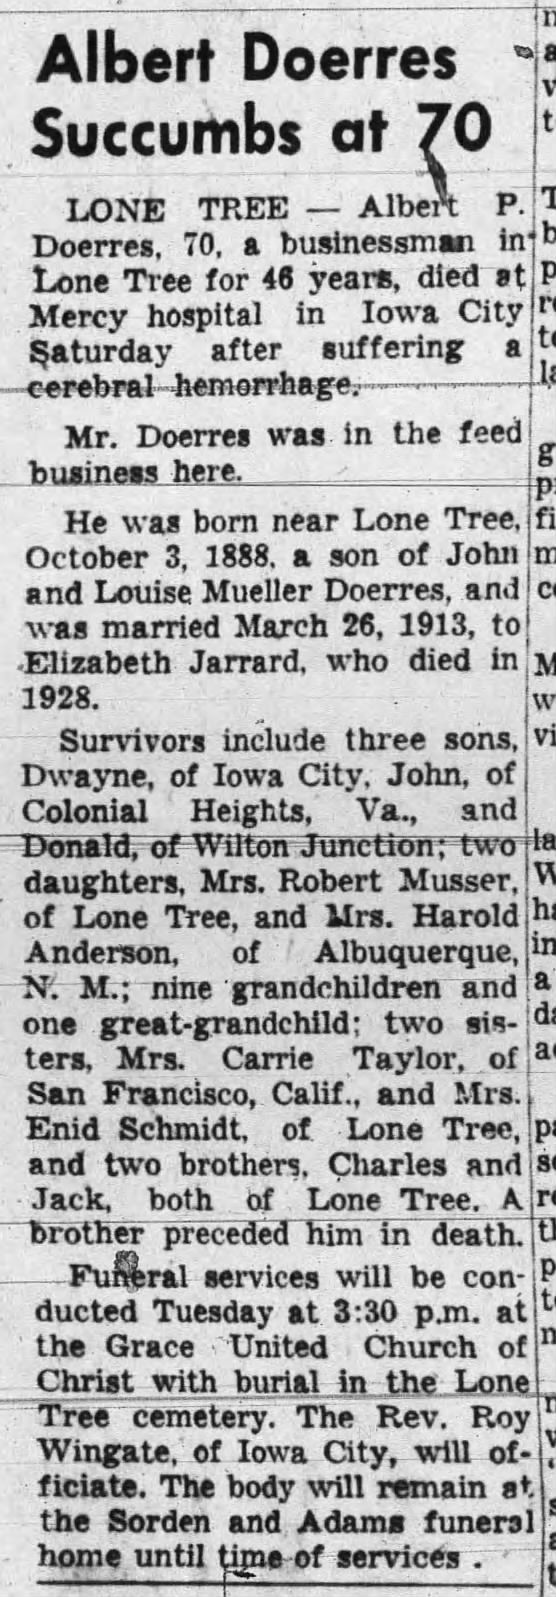 9-14-1959 Iowa City Press